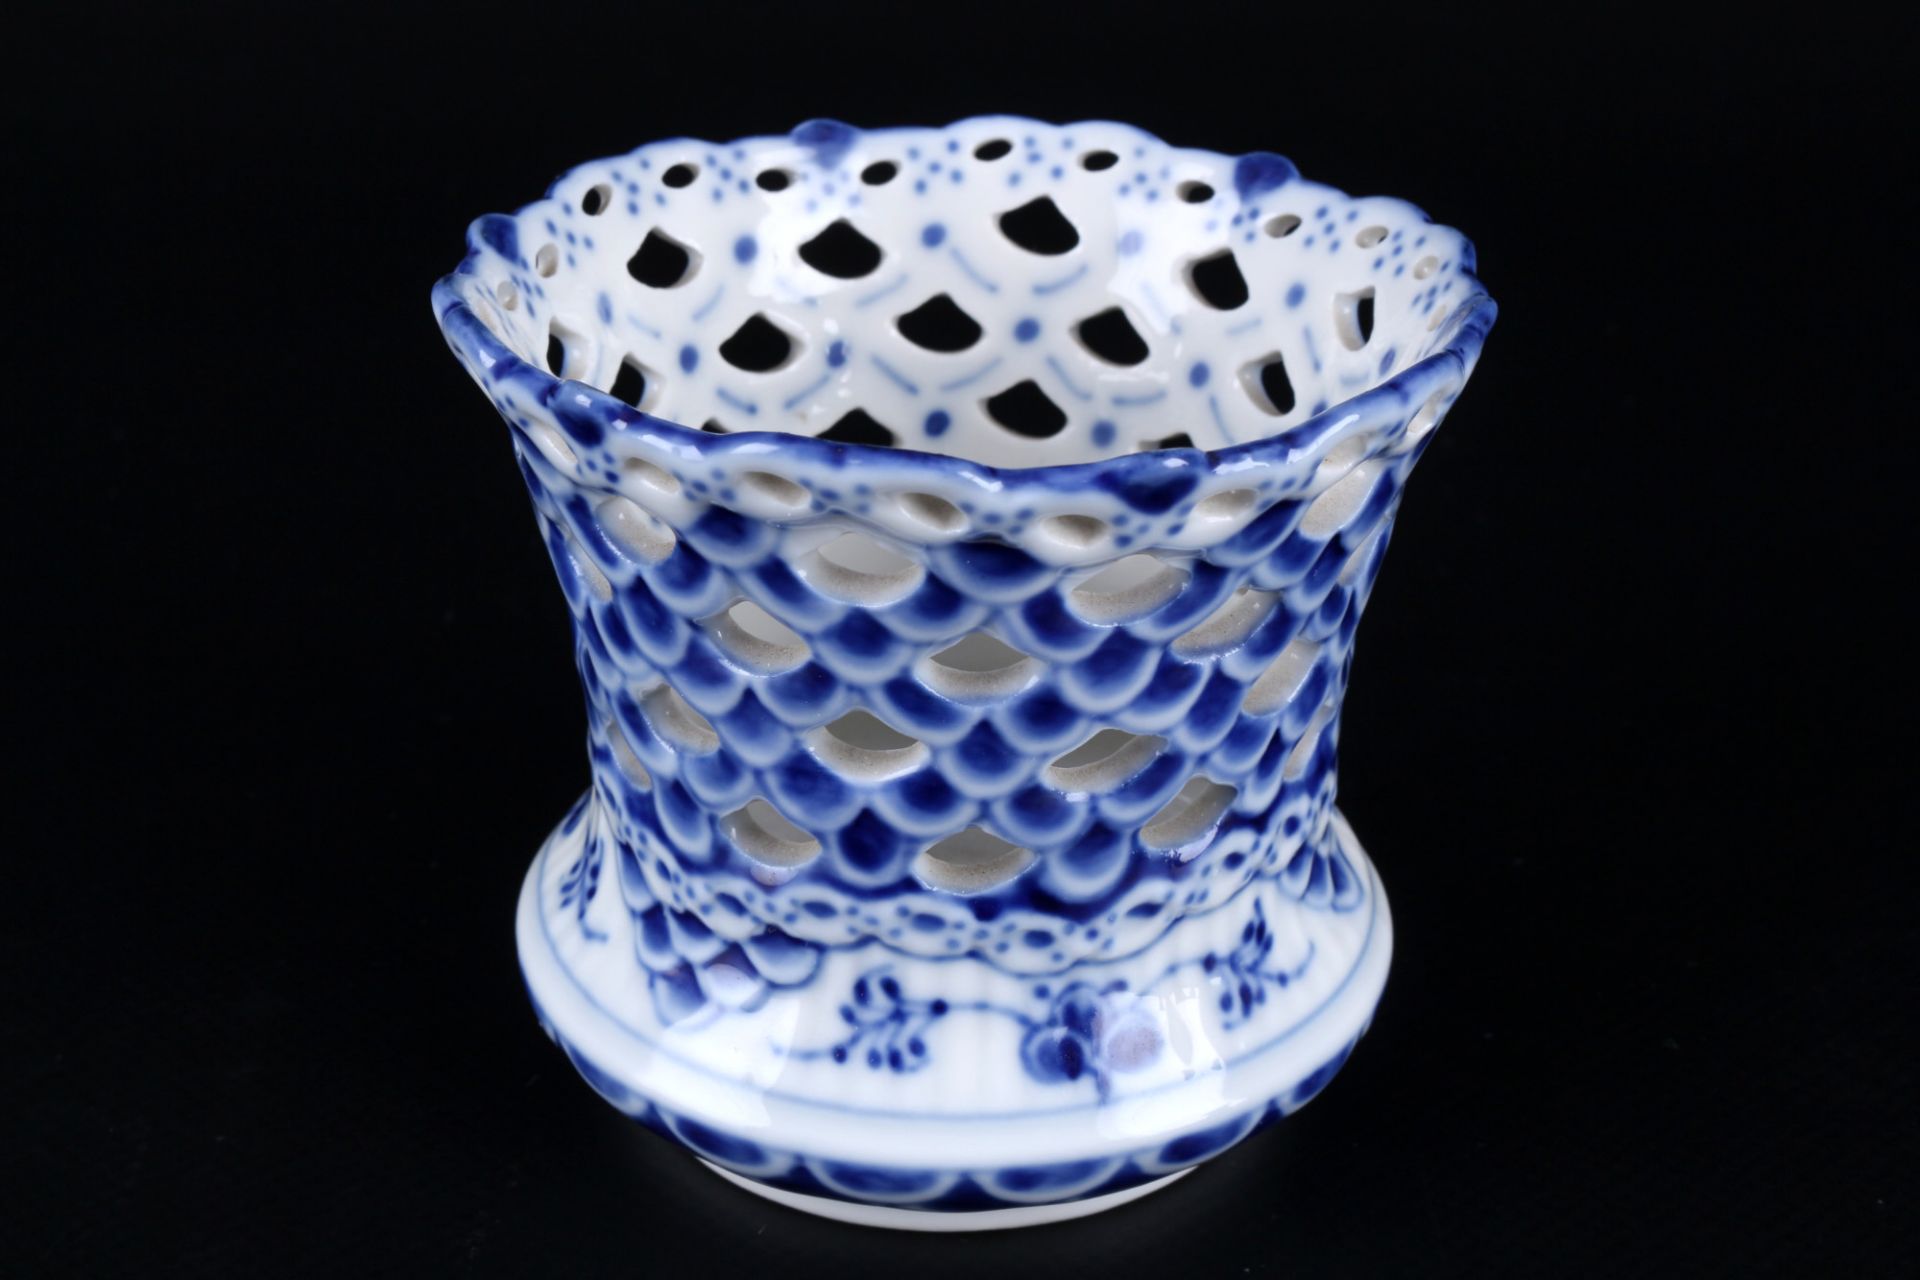 Royal Copenhagen Musselmalet Full Lace 3 Vases 1015/1016 1st choice, Vollspitze Vasen, - Image 3 of 5